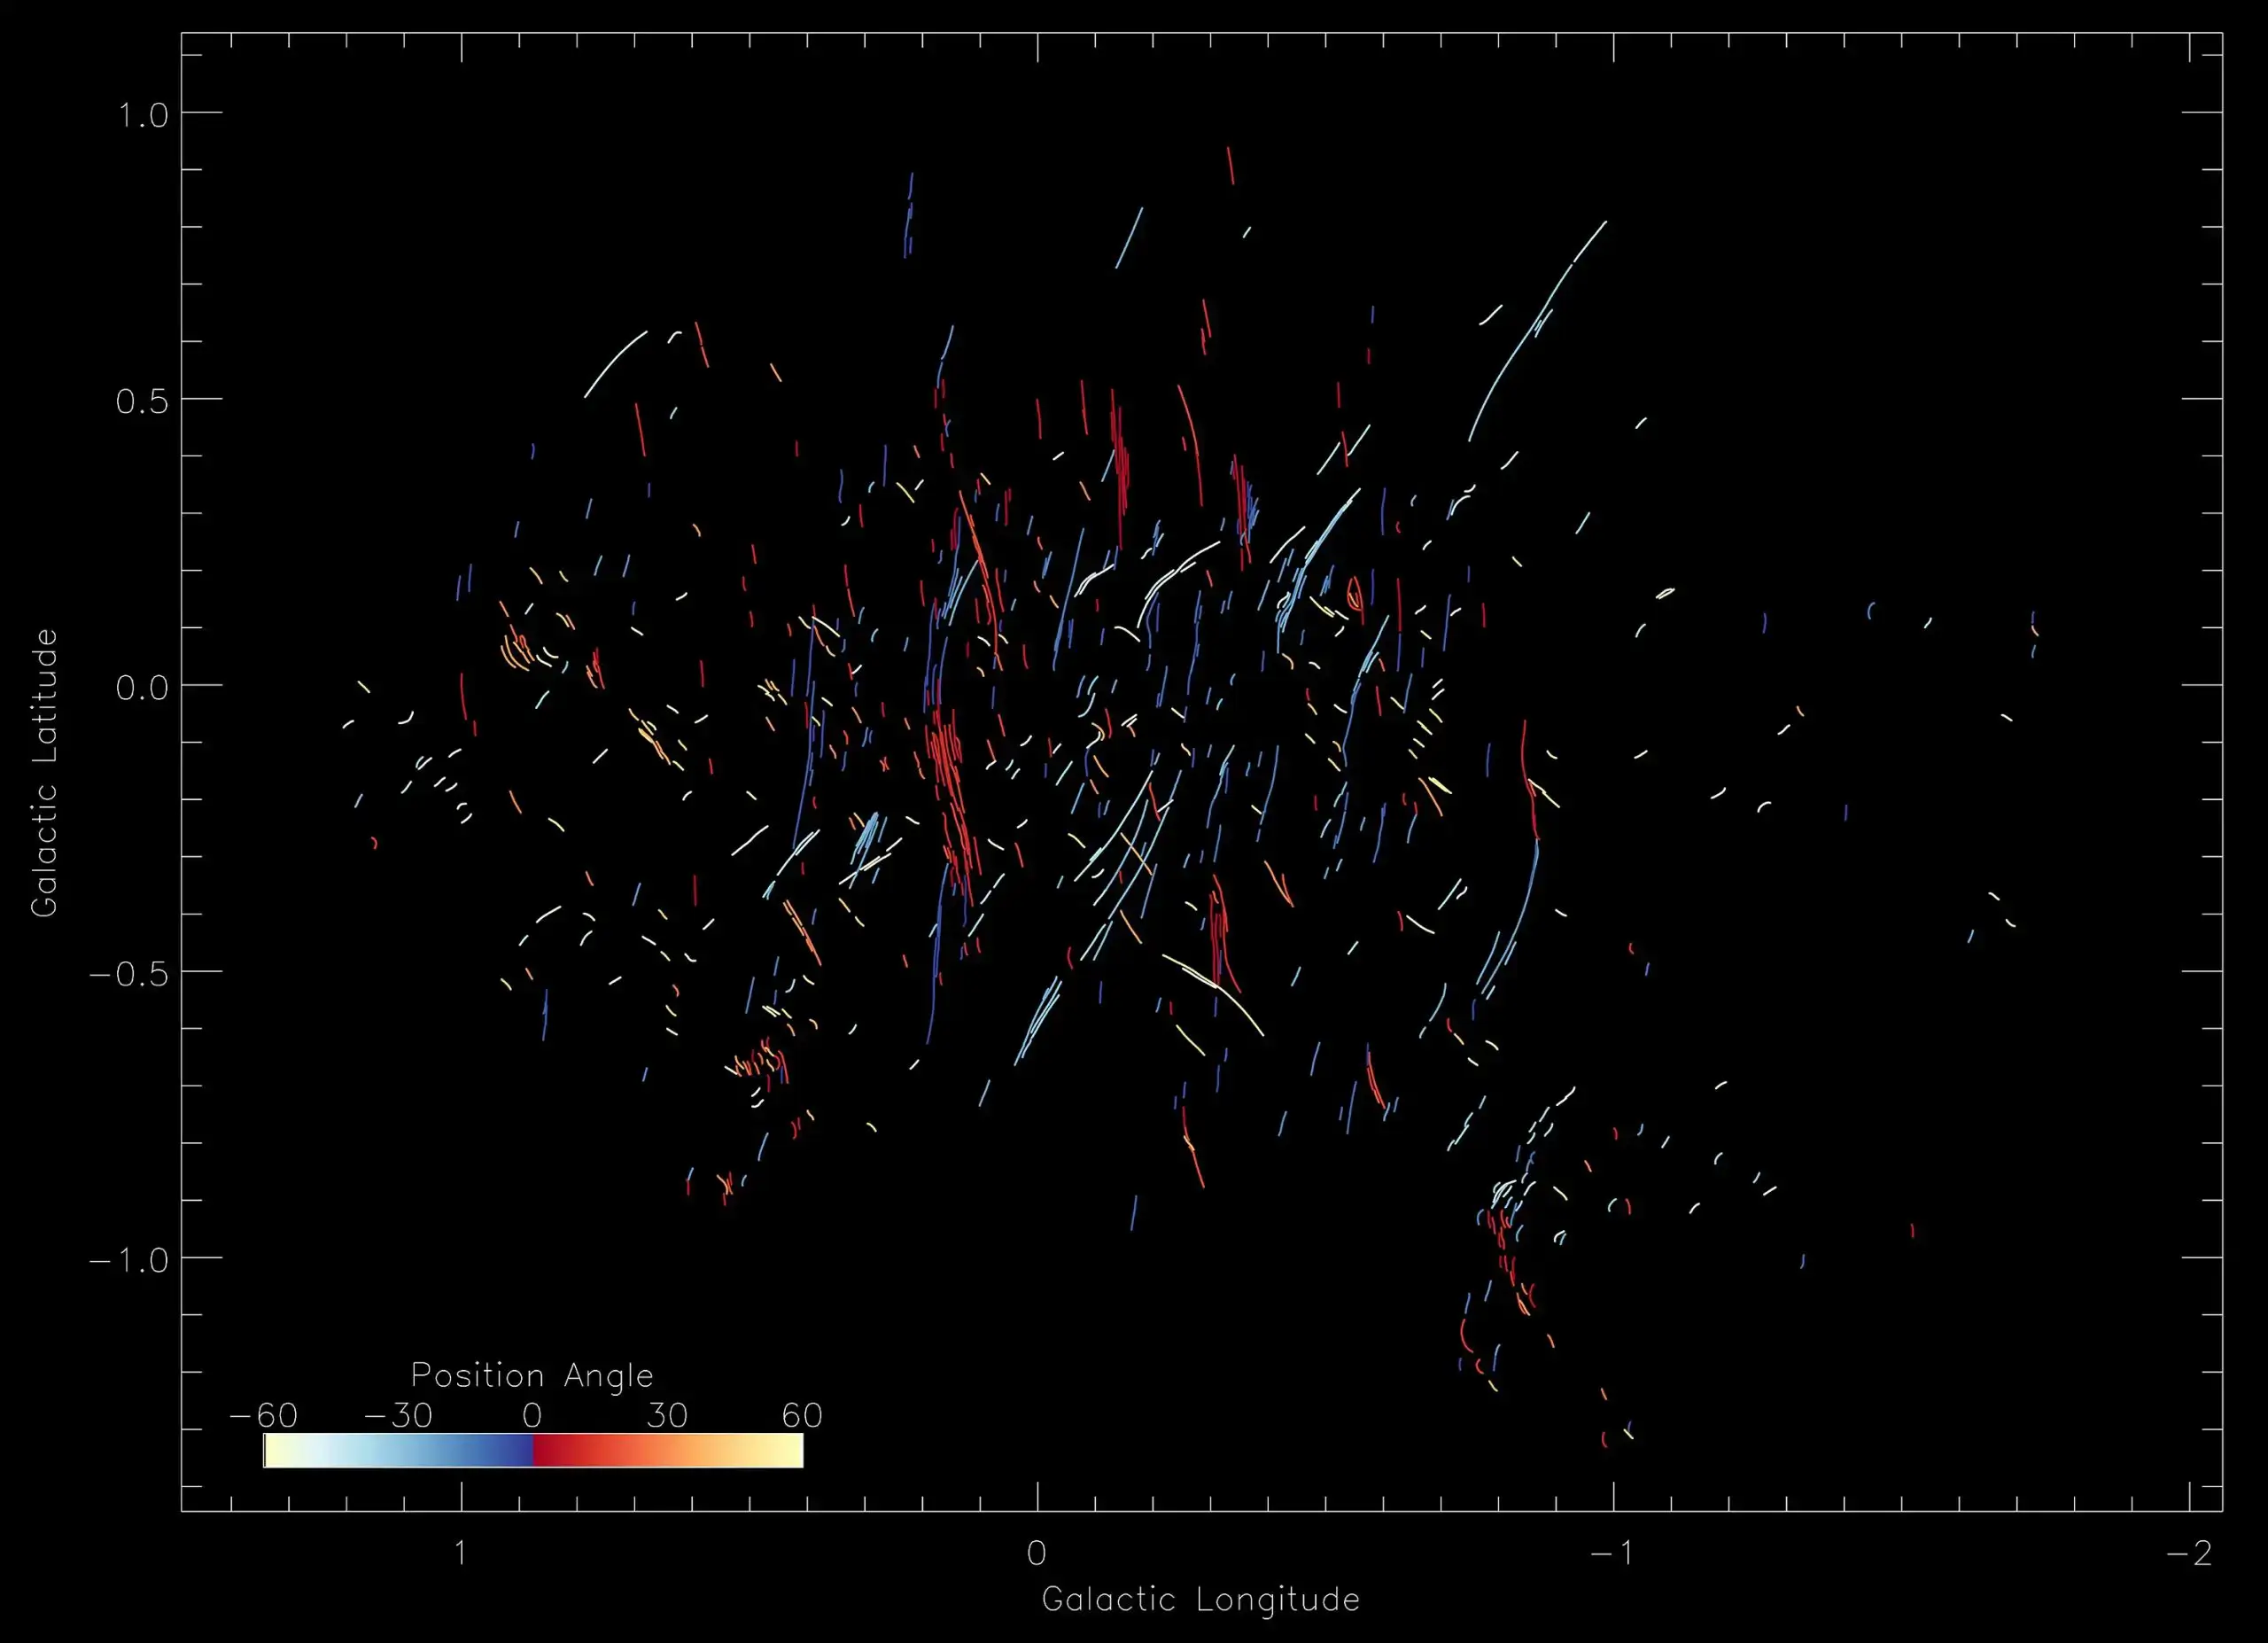 תמונת MeerKAT של מרכז הגלקסיה עם זוויות מיקום בצבעים שונים של כל הנימות. 
קרדיט: Farhad Yusef-Zadeh/Northwestern University
